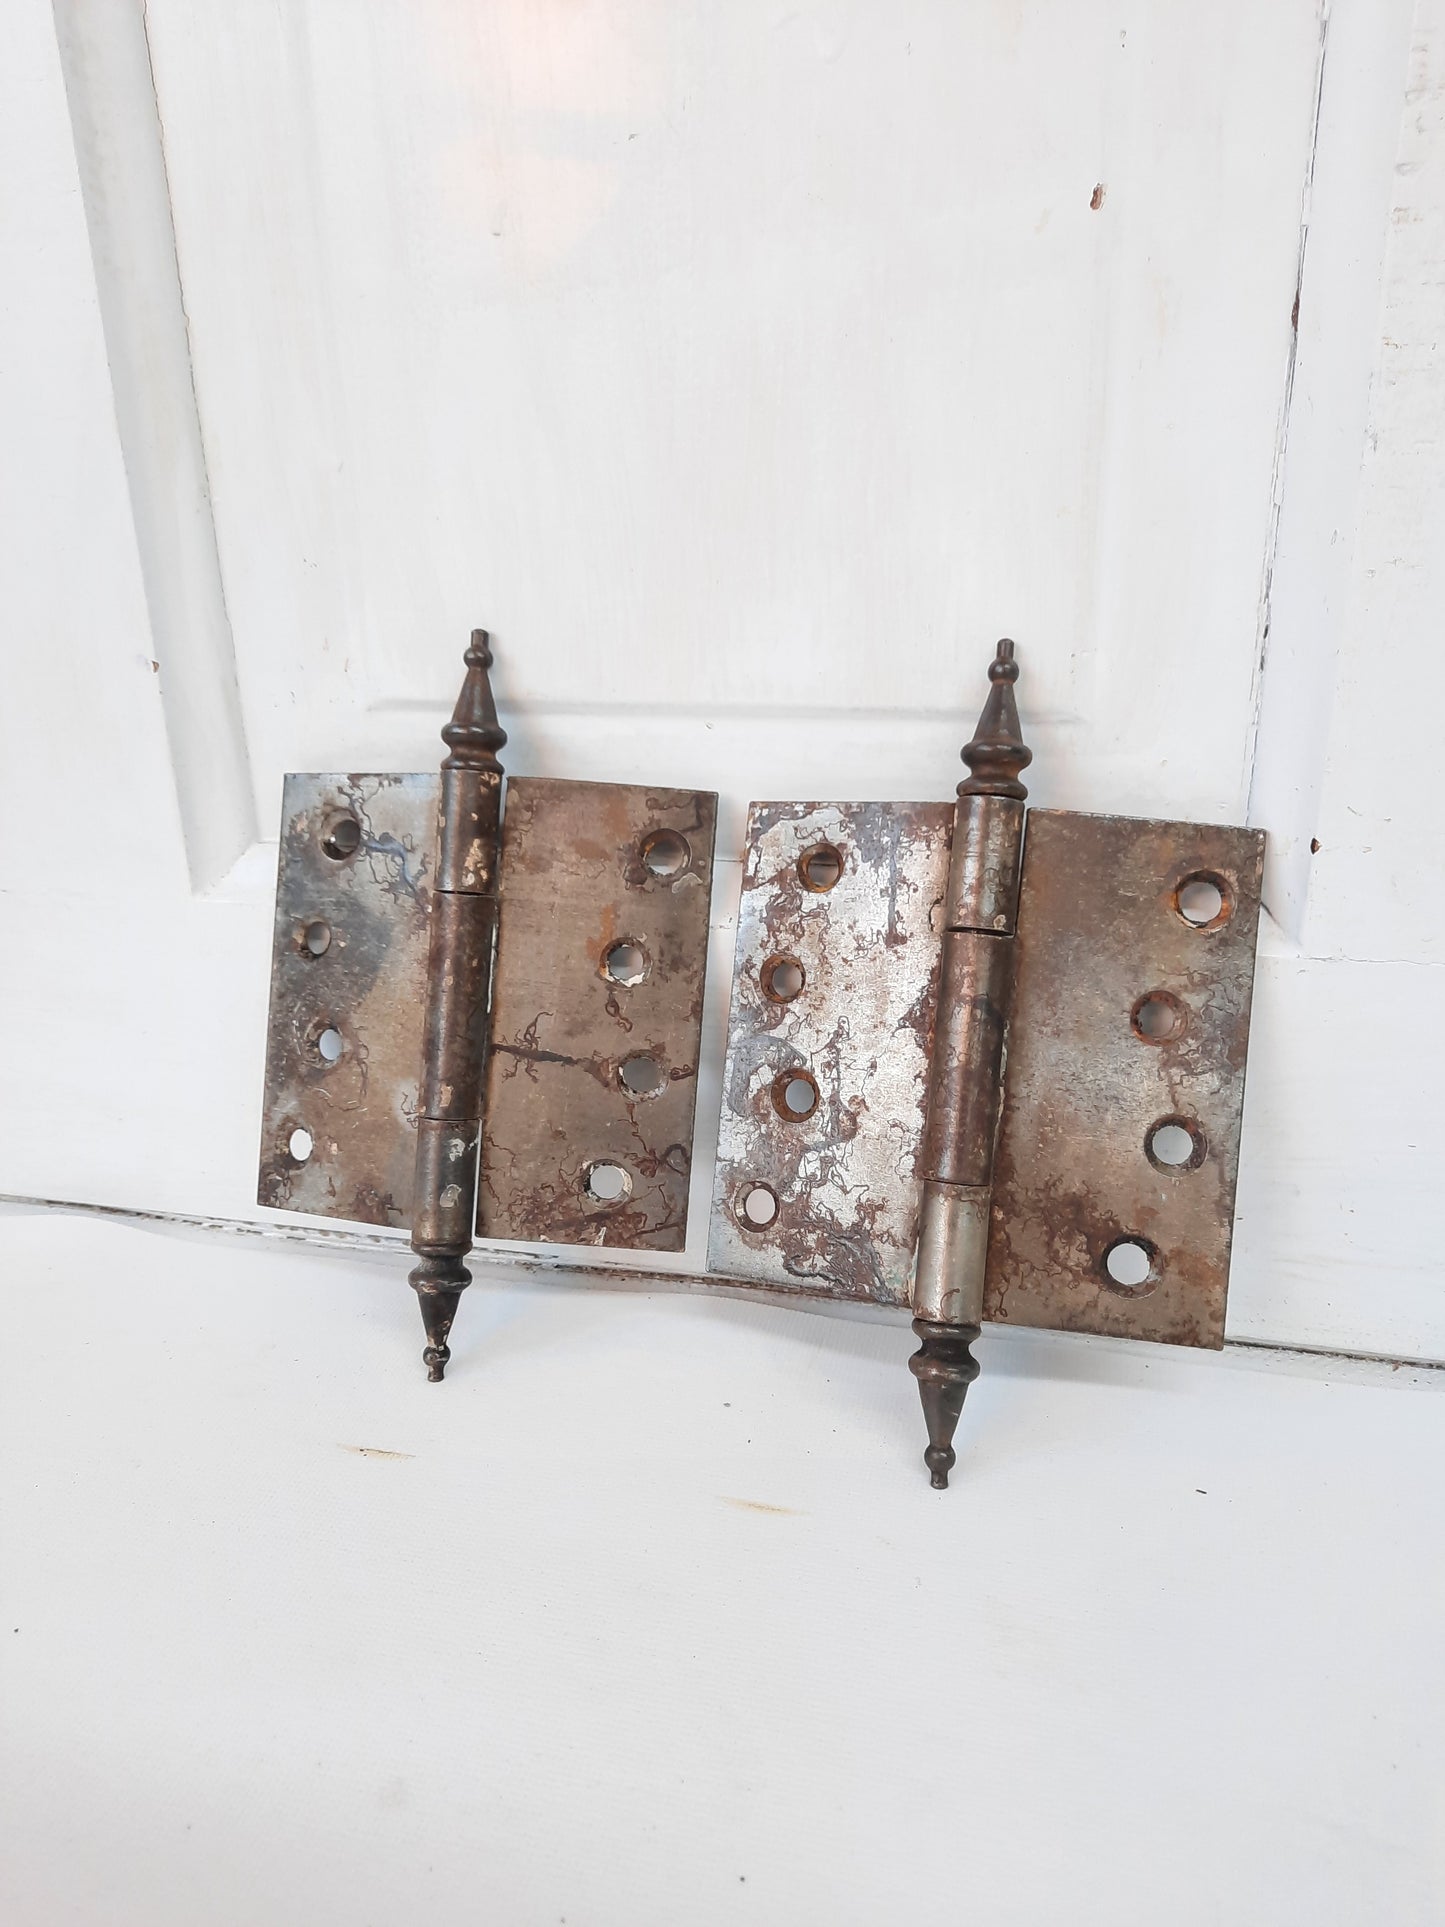 4" Pair of Steeple Tip Antique Hinges, Vintage Large Door Hinges or Hanging Hardware 111805